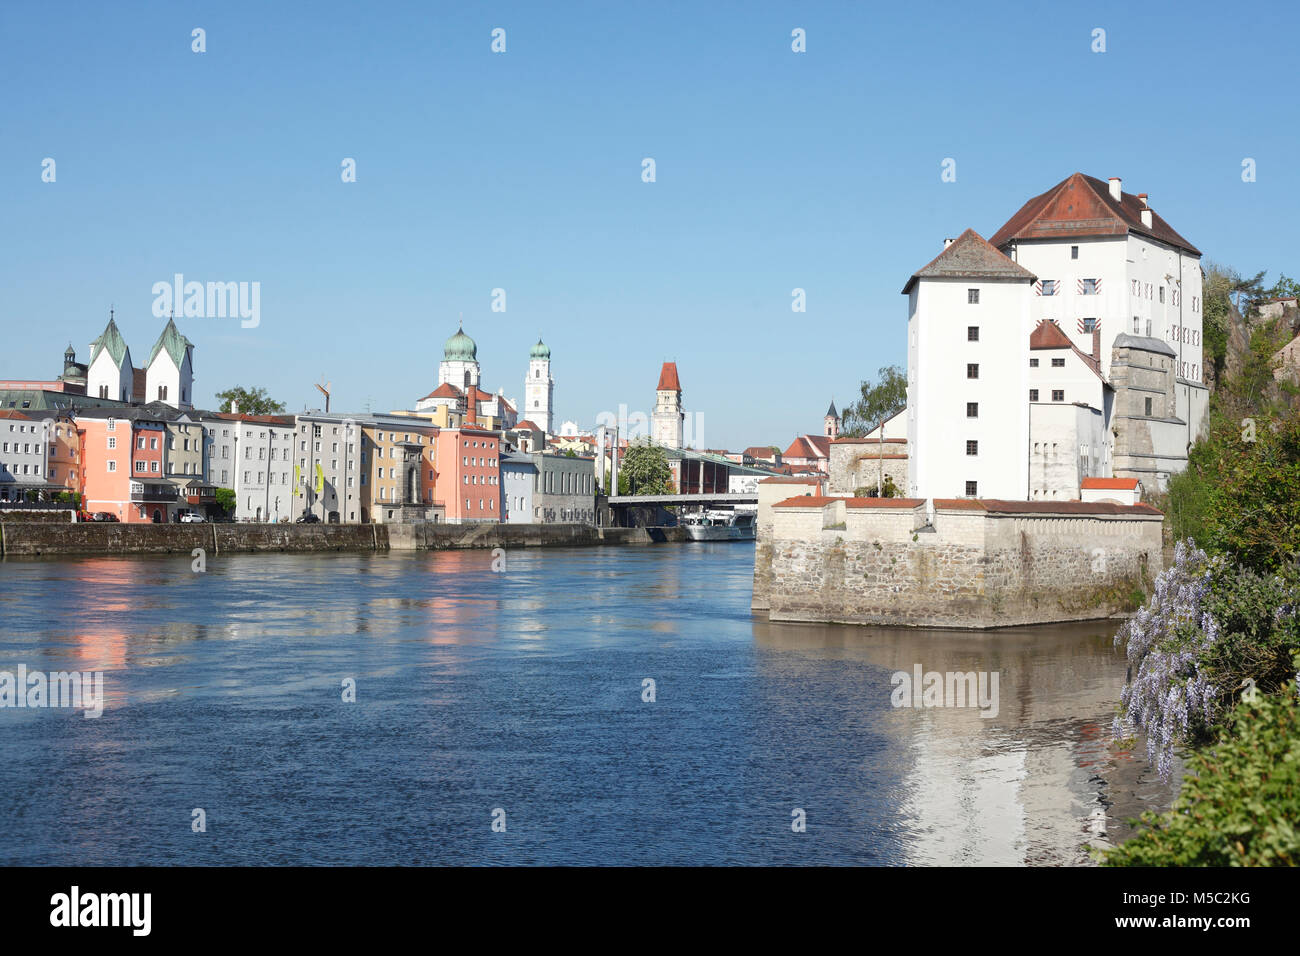 Donau, Veste Niederhaus und Altstadt, Passau, Niederbayern, Bayern, Deutschland, Europa, Bayern, Deutschland, Europa Stock Photo